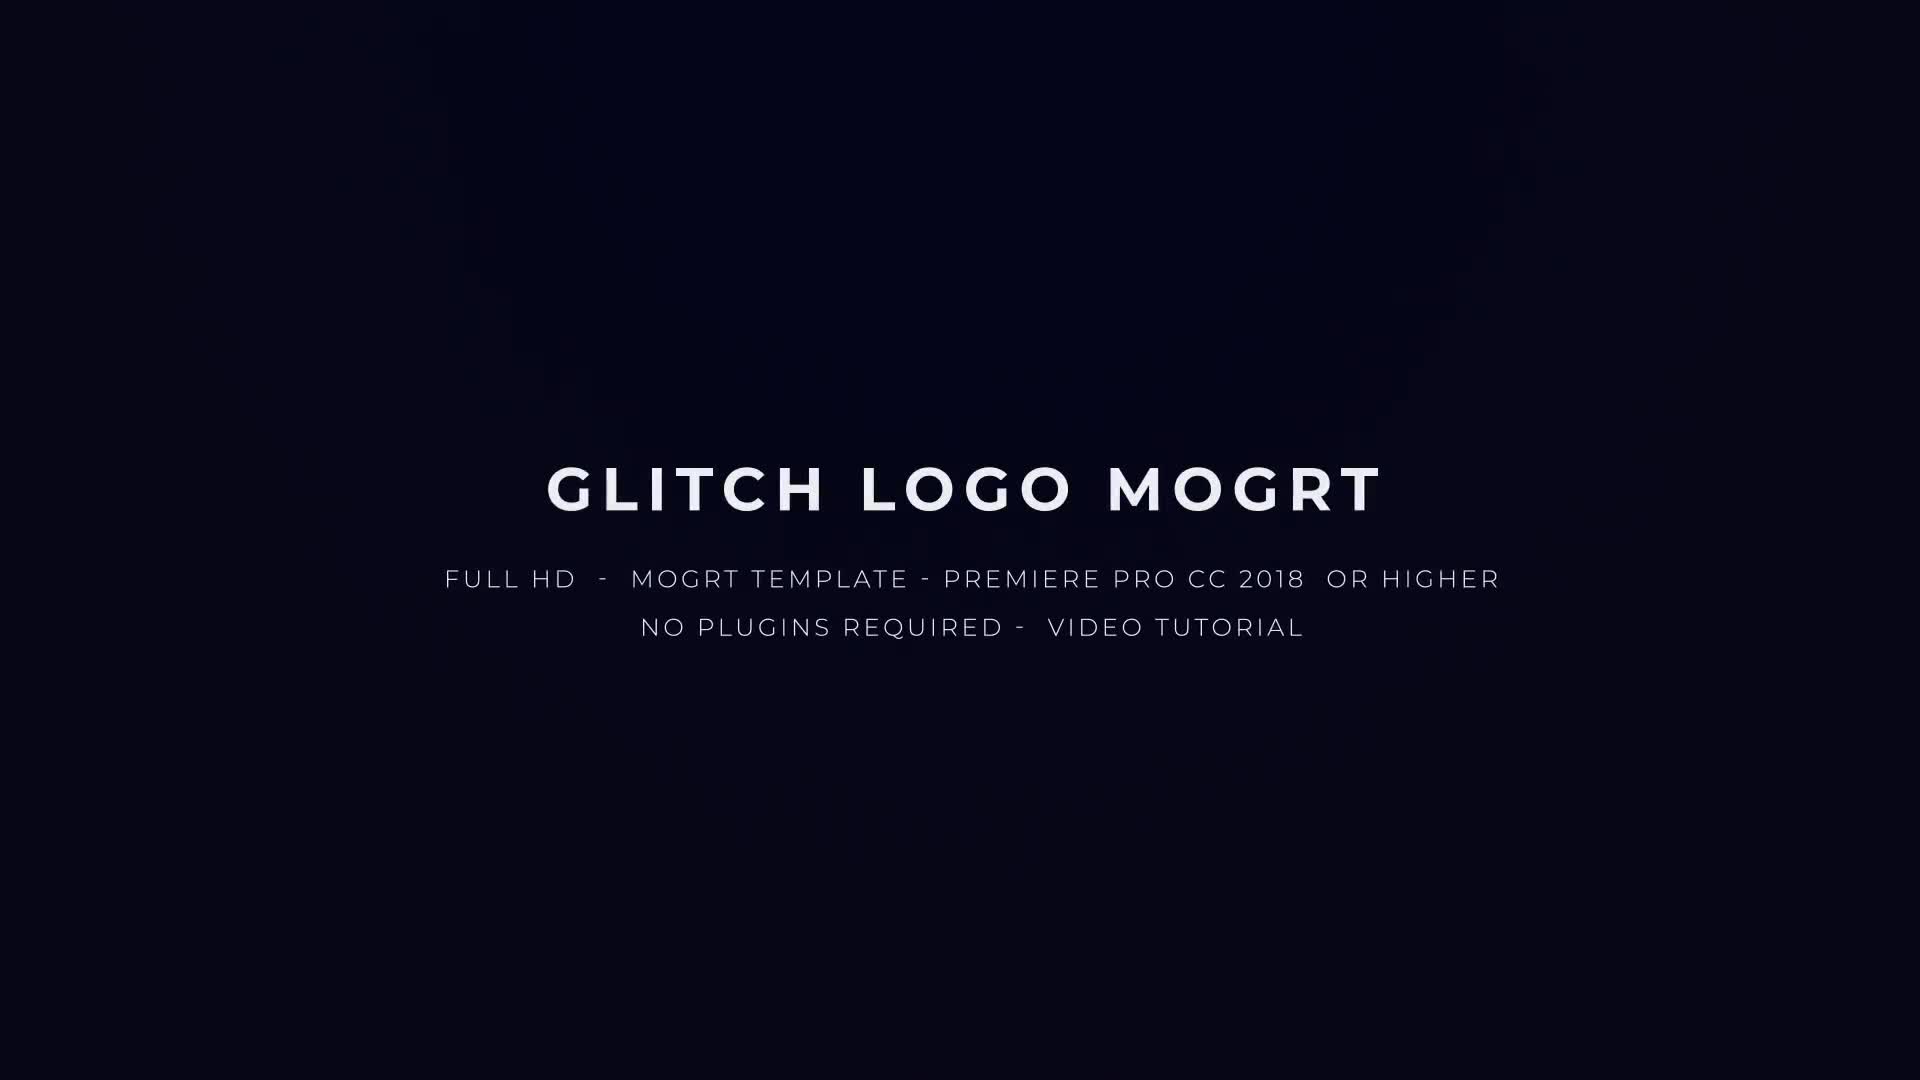 Glitch Logo Mogrt Videohive 22871341 Premiere Pro Image 1